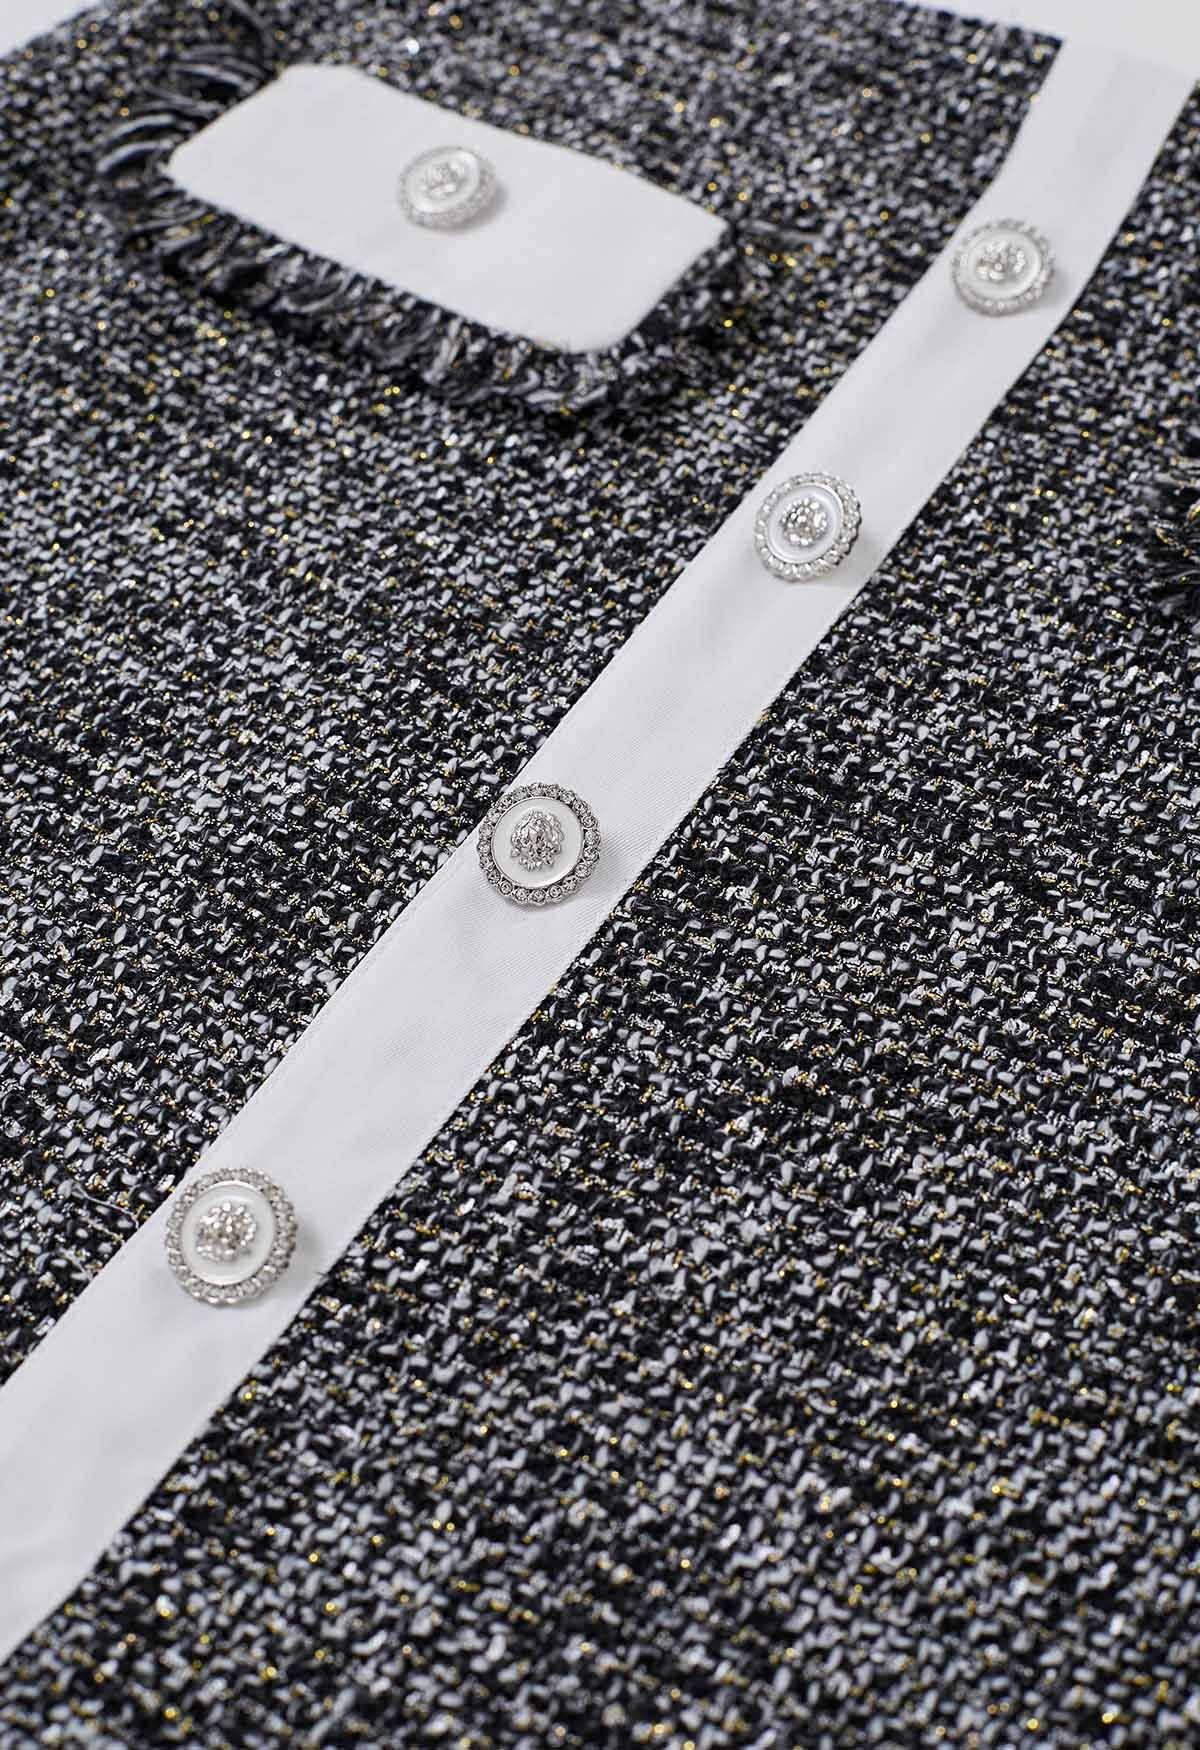 Mini-jupe boutonnée en tweed à franges et boutons